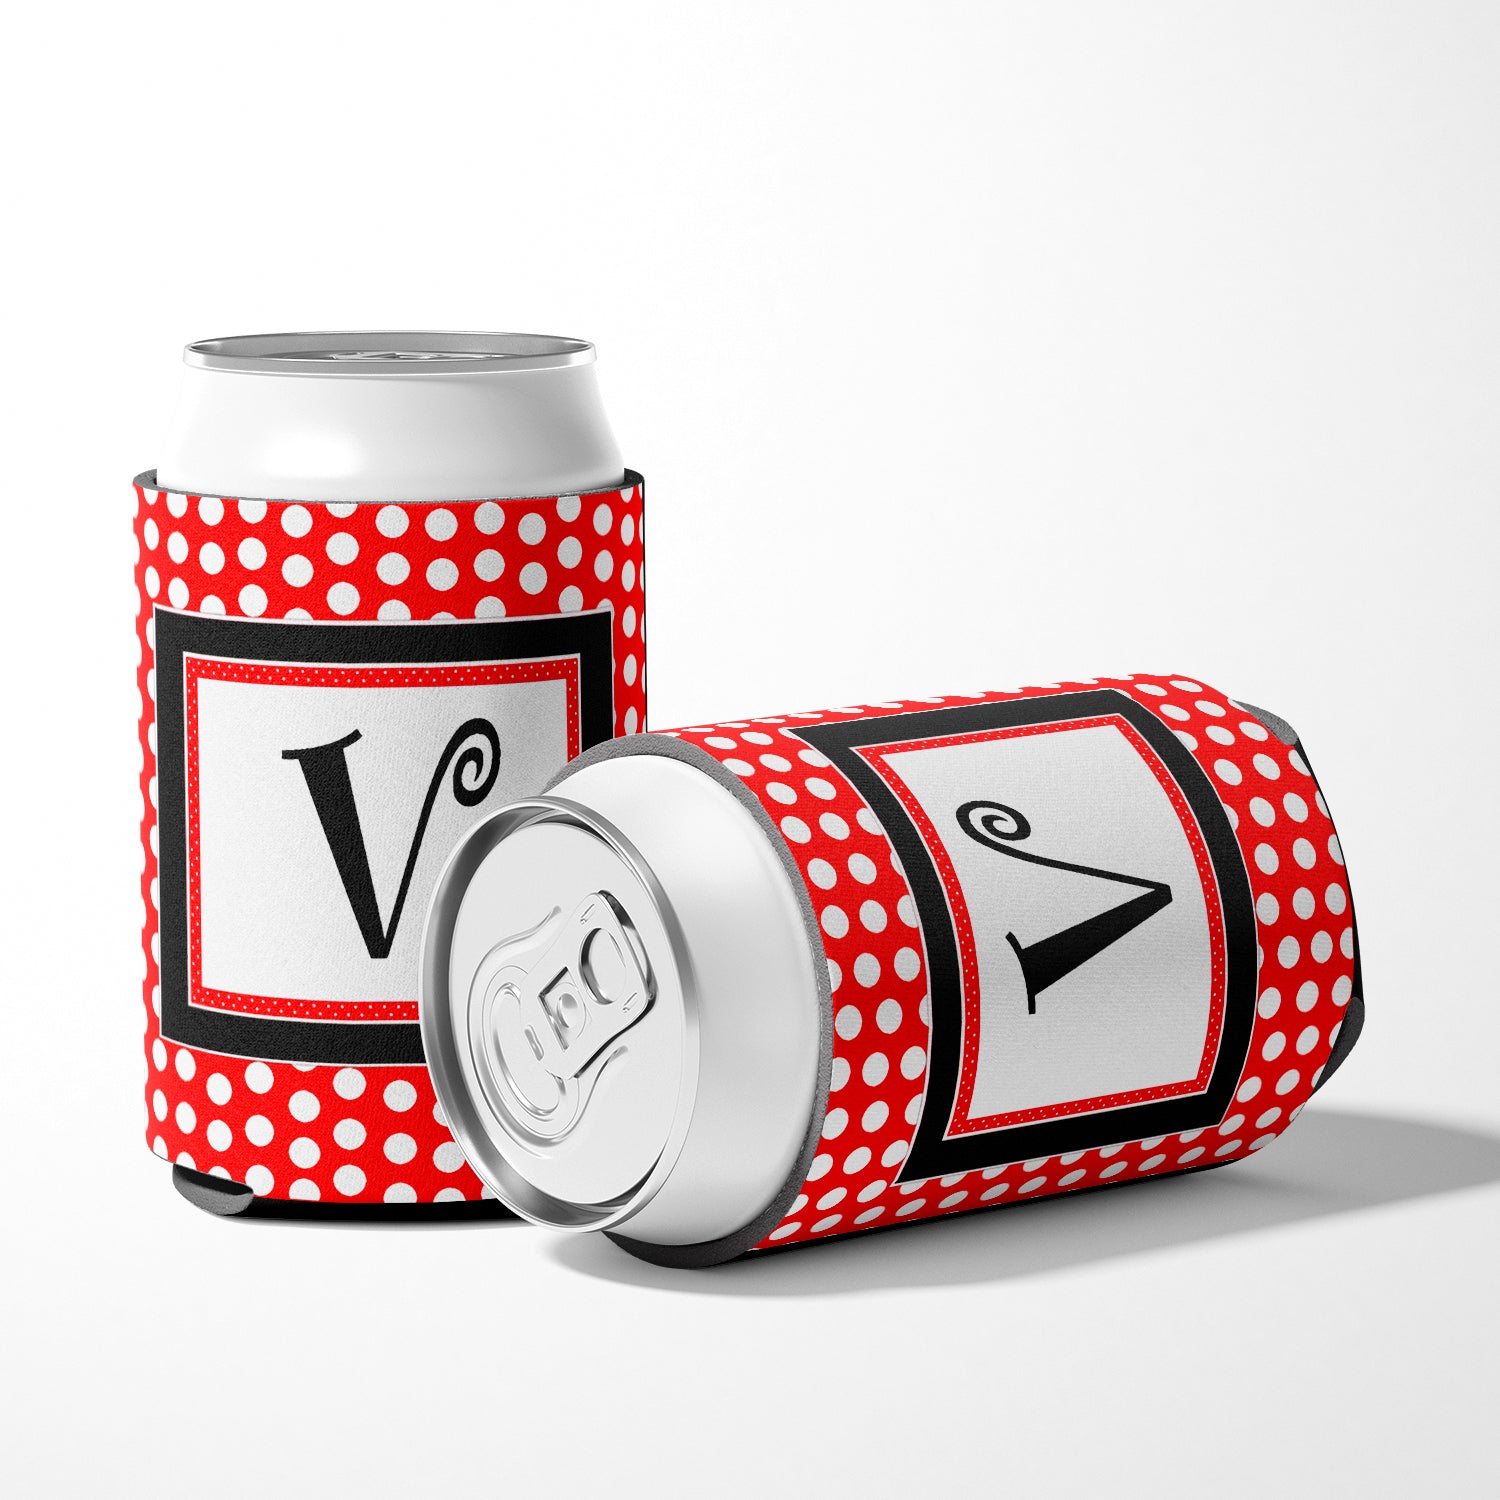 Letter V Initial Monogram - Red Black Polka Dots Can or Bottle Beverage Insulator Hugger